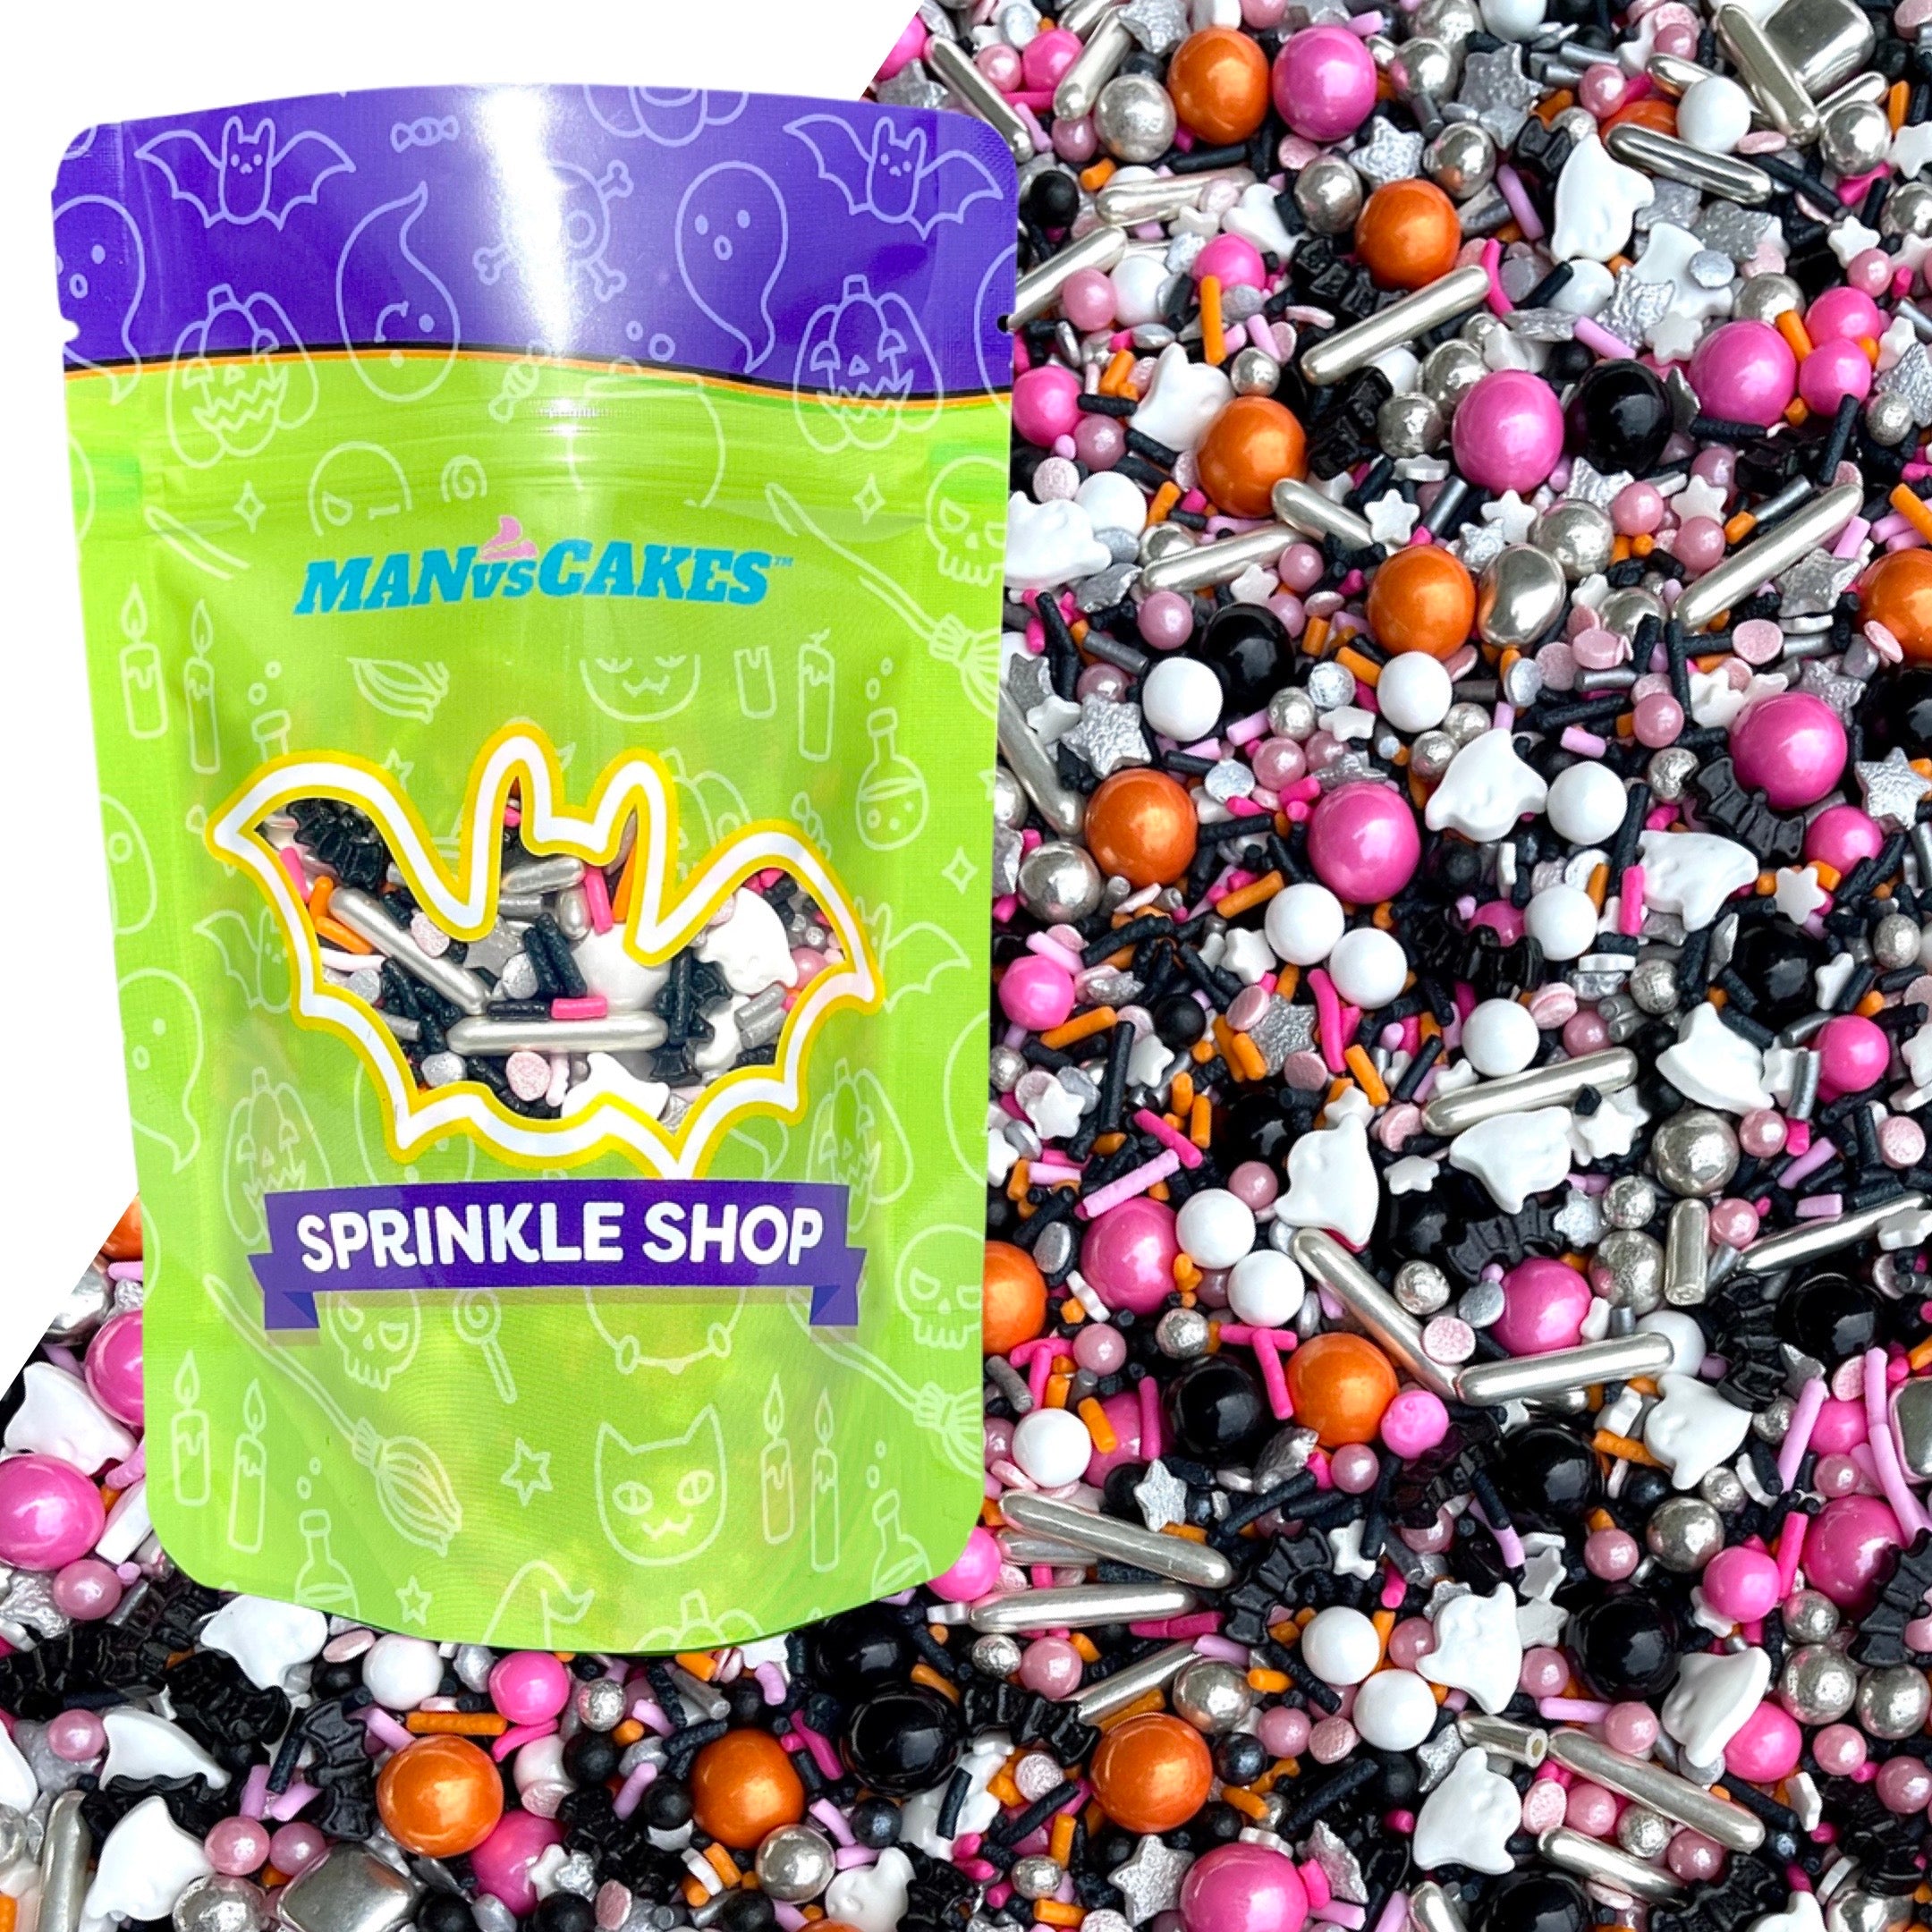 Sprinkles | Boo bubbles | Ghost sprinkles | Halloween sprinkles | Manvscakes